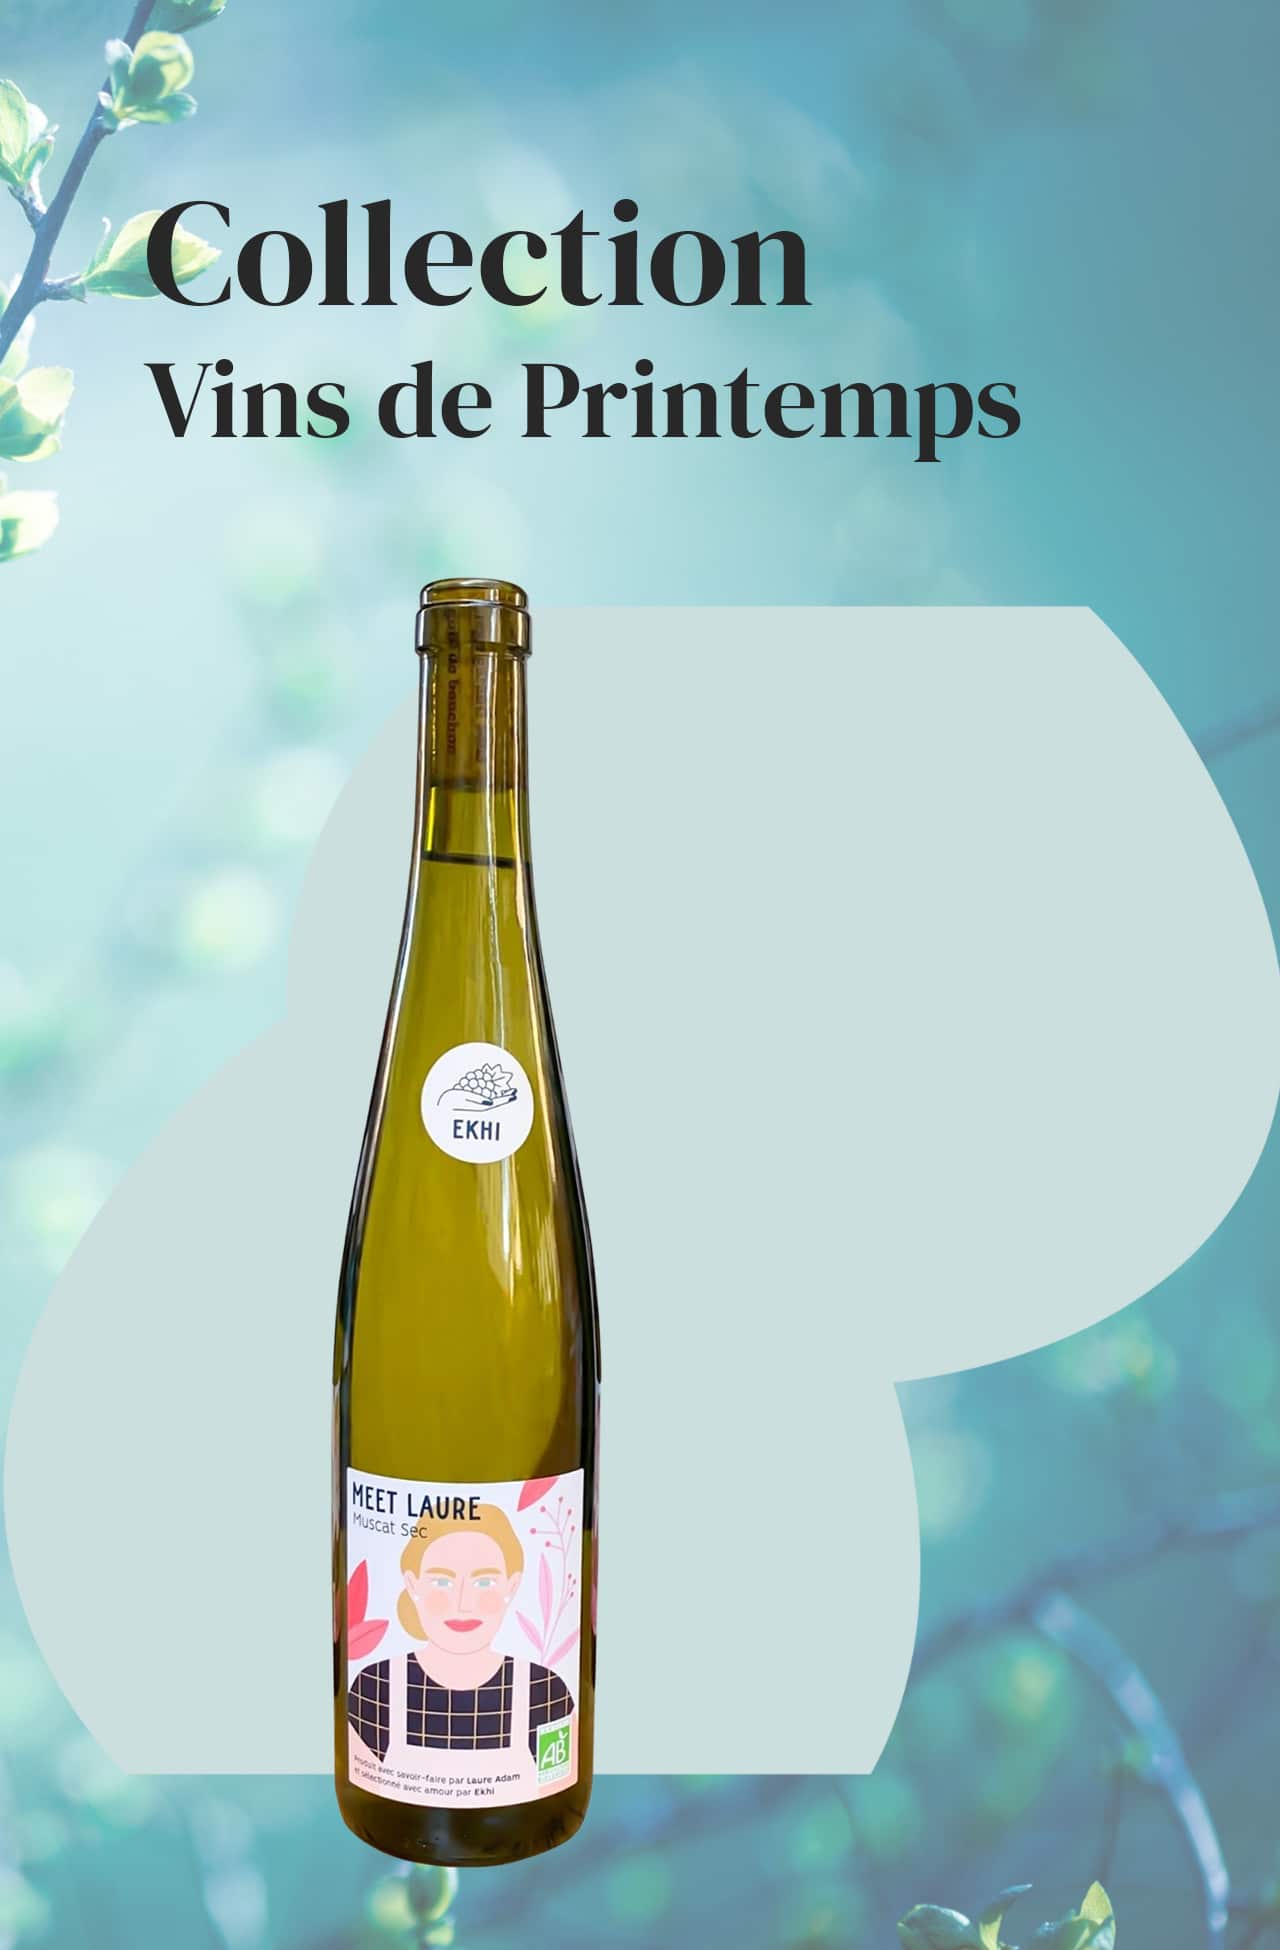 Sélection de vins pour le printemps avec la cuvée Meet Laure, vin blanc sec Bio, Muscat sec, vin d'Alsace